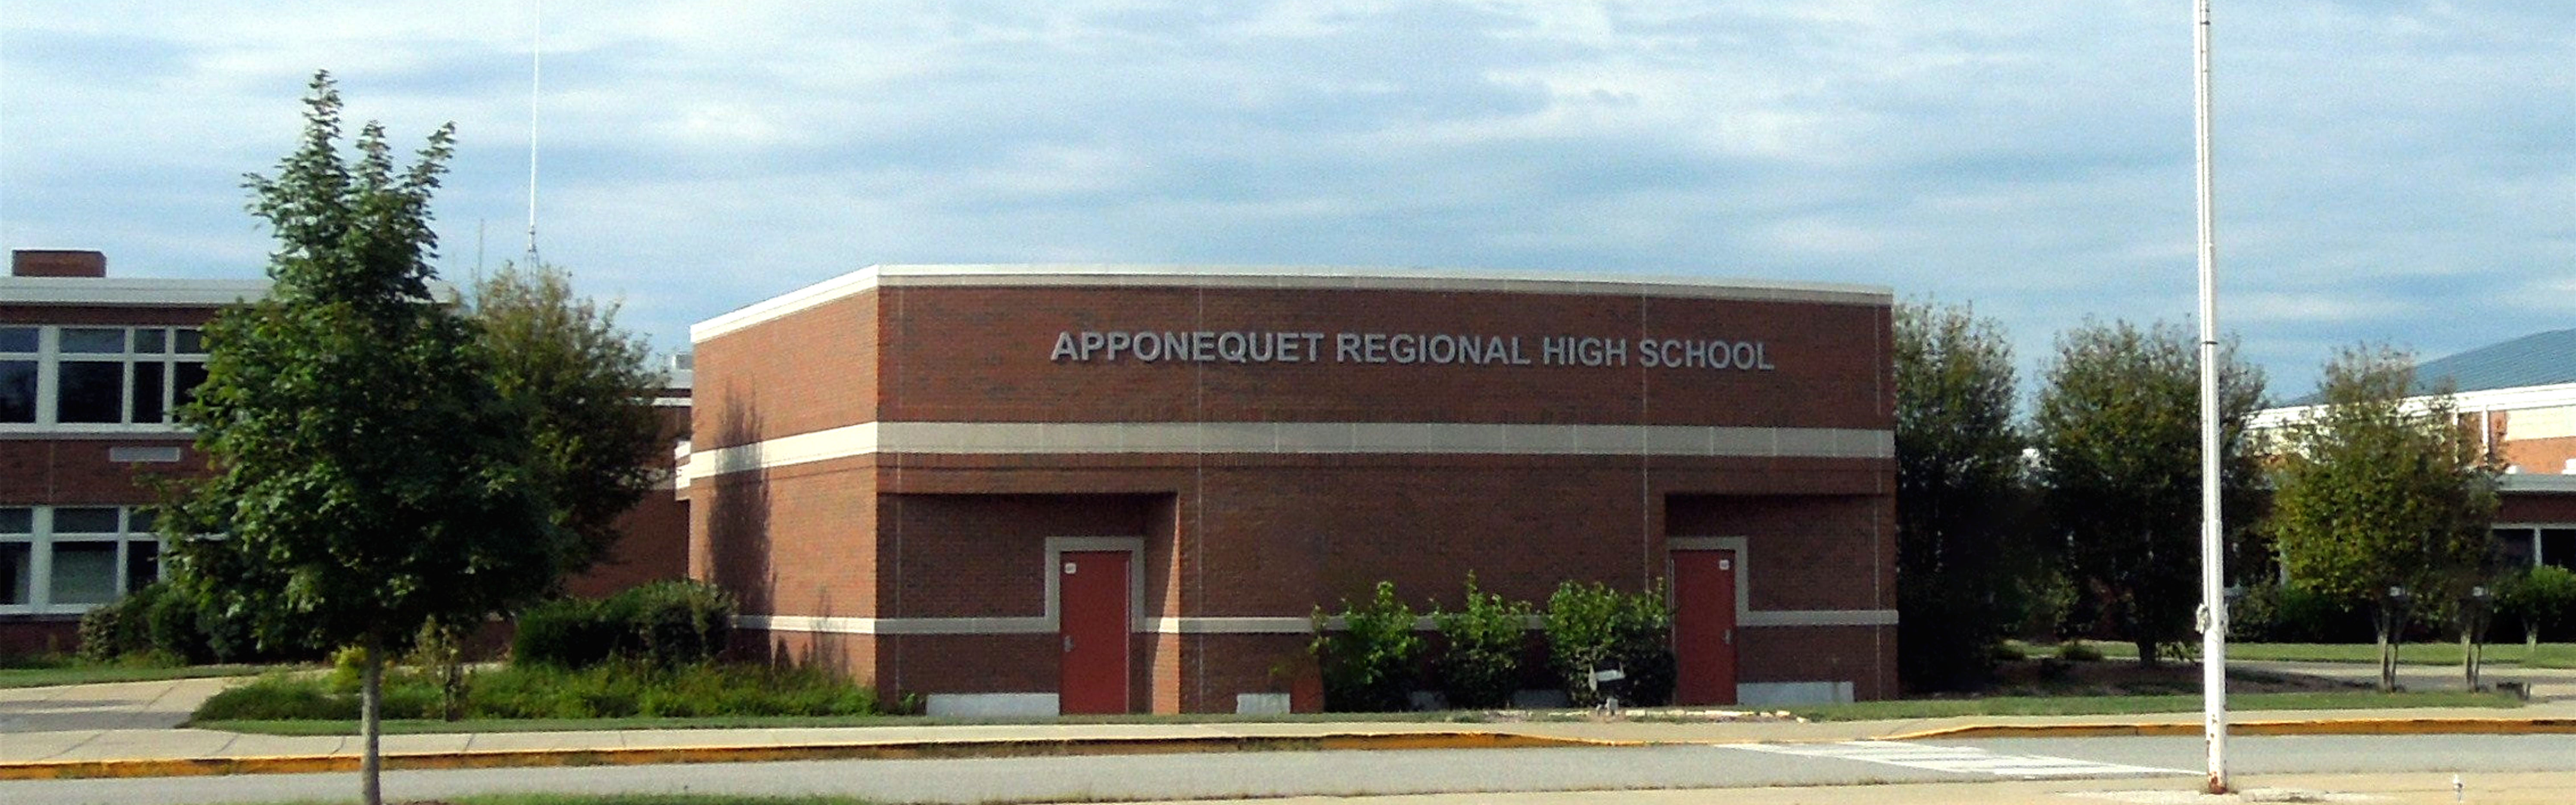 Pictrure of Apponequet Regional High School Building front doors